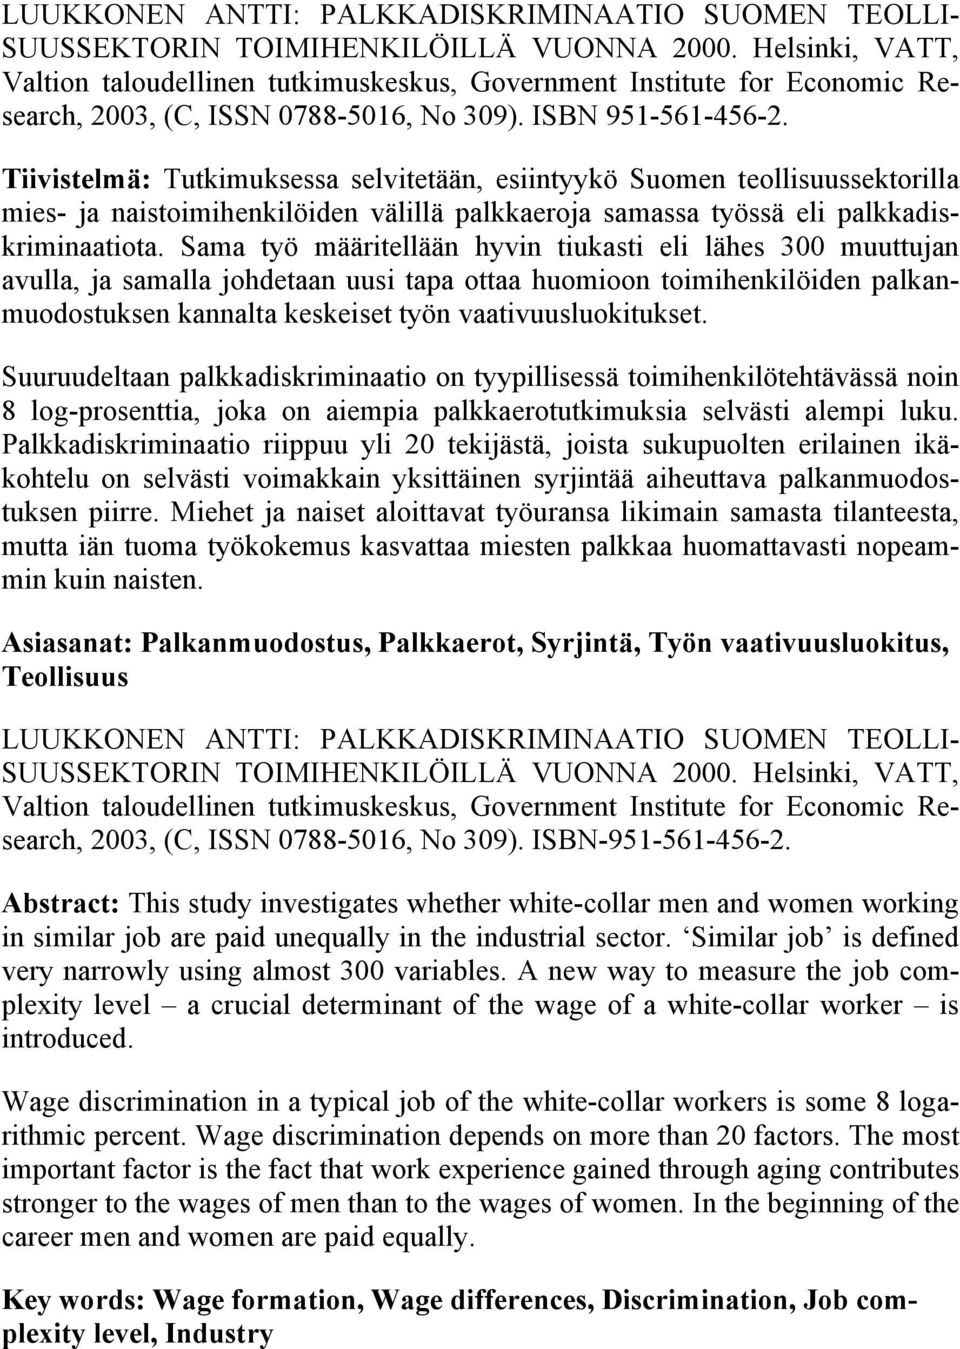 Tiivistelmä: Tutkimuksessa selvitetään, esiintyykö Suomen teollisuussektorilla mies- ja naistoimihenkilöiden välillä palkkaeroja samassa työssä eli palkkadiskriminaatiota.